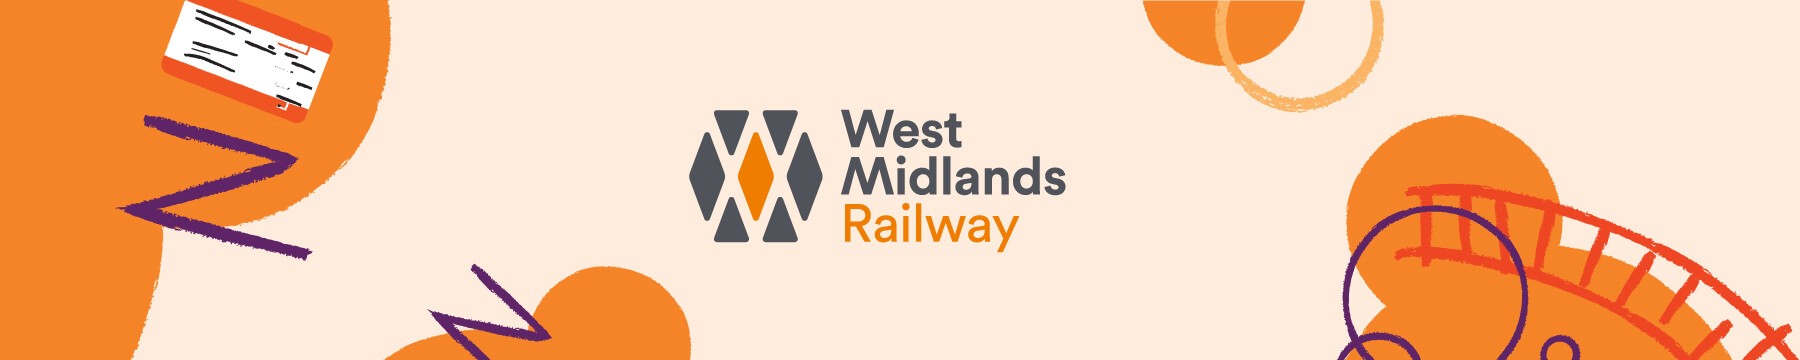 West Midlands Railway banner